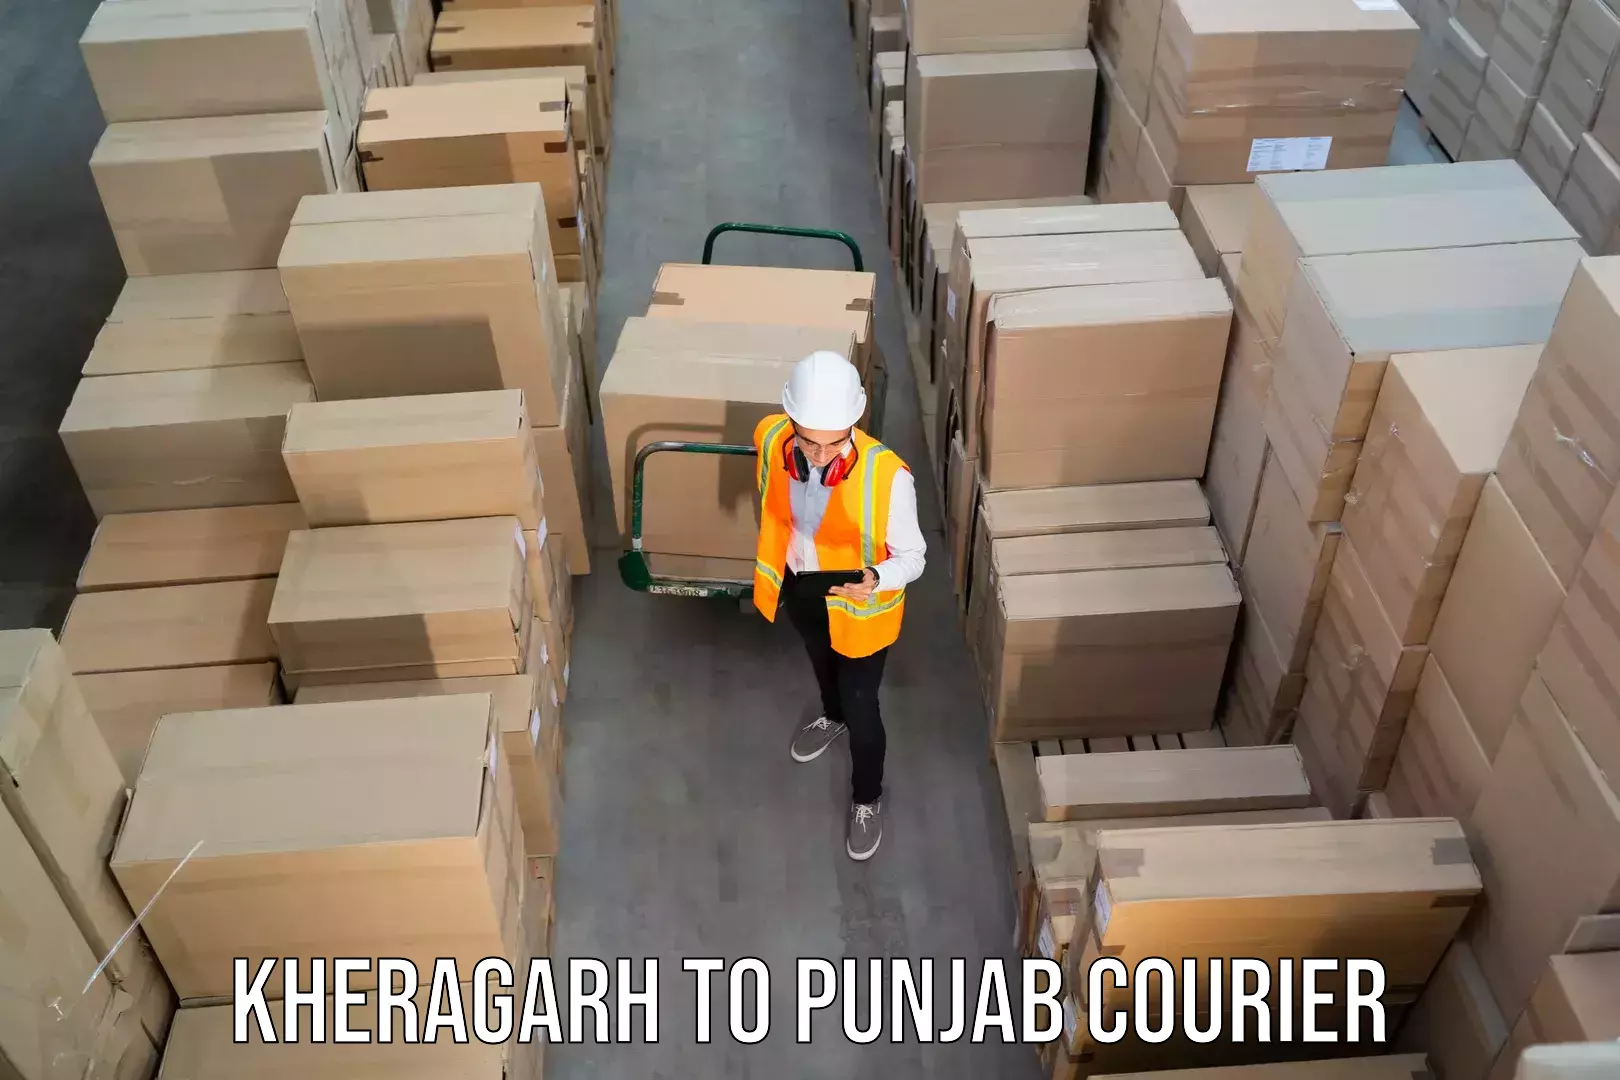 Flexible parcel services Kheragarh to Gurdaspur